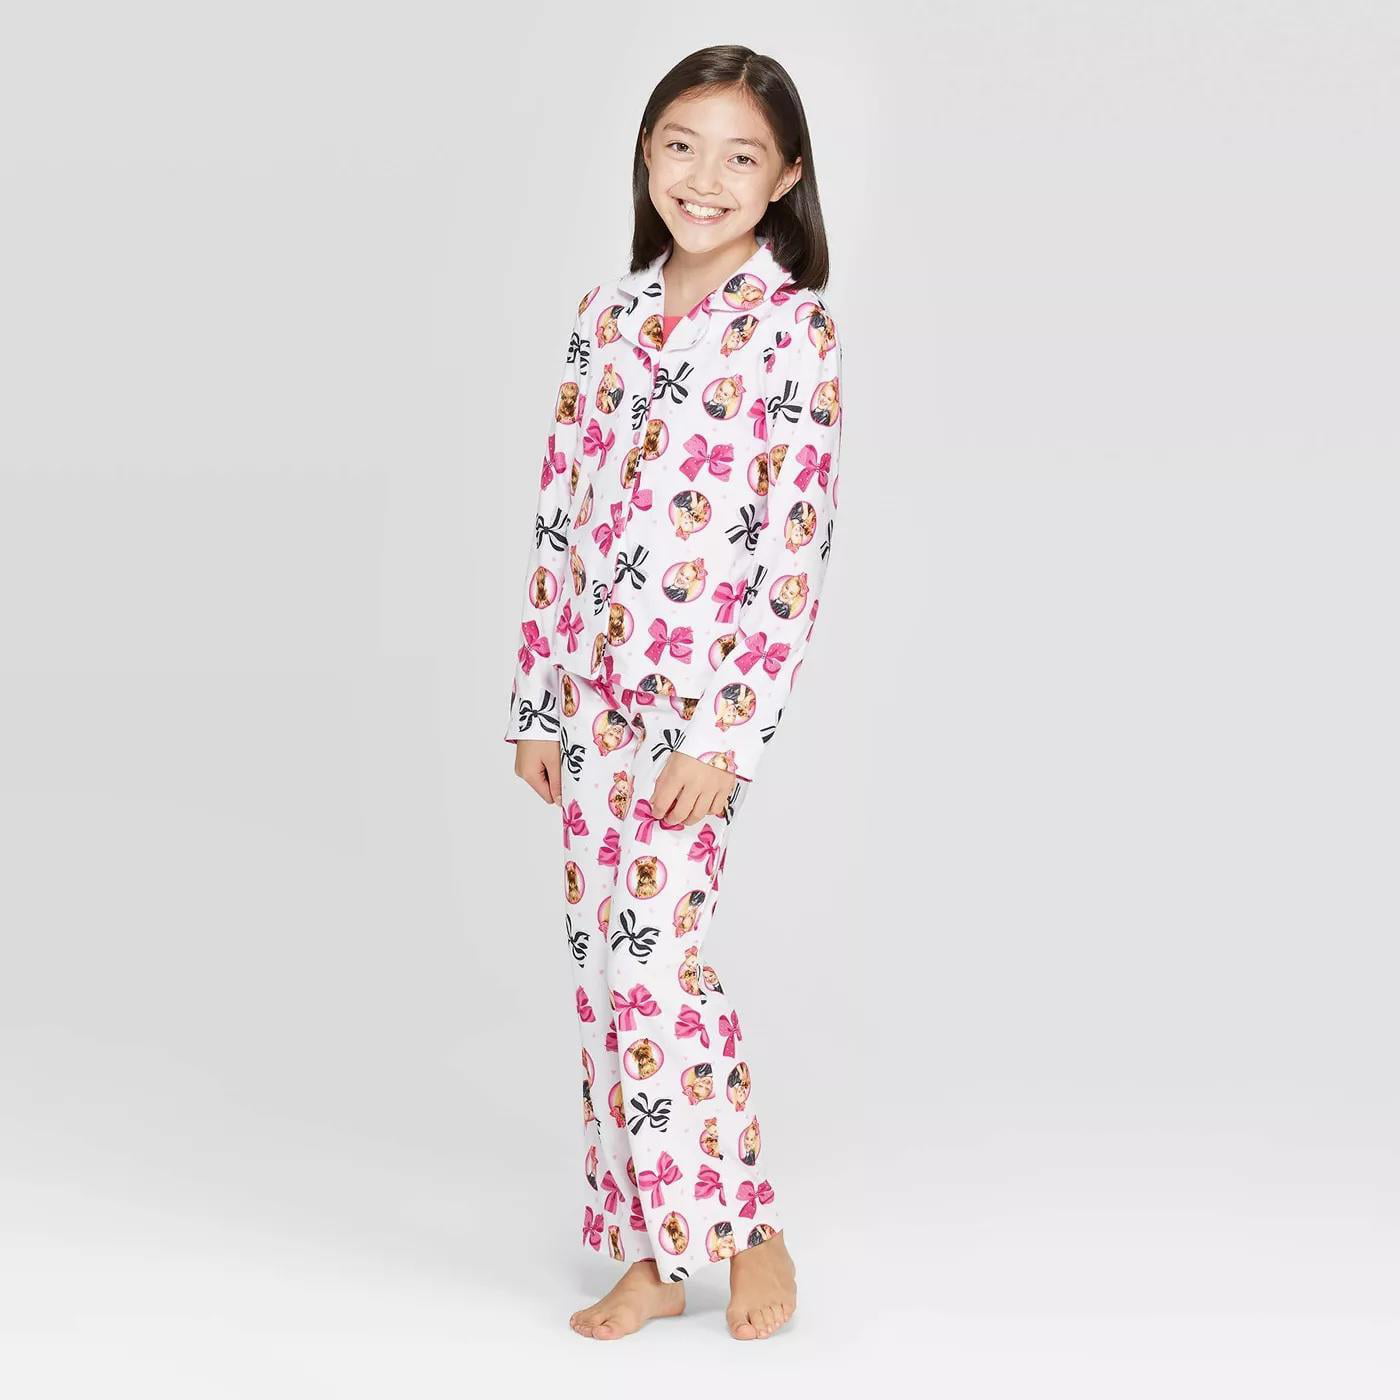 New JOJO SIWA Bow Bow Nickelodeon 2 pic Flannel Pajamas Sleepwear Set Size 6/6x 